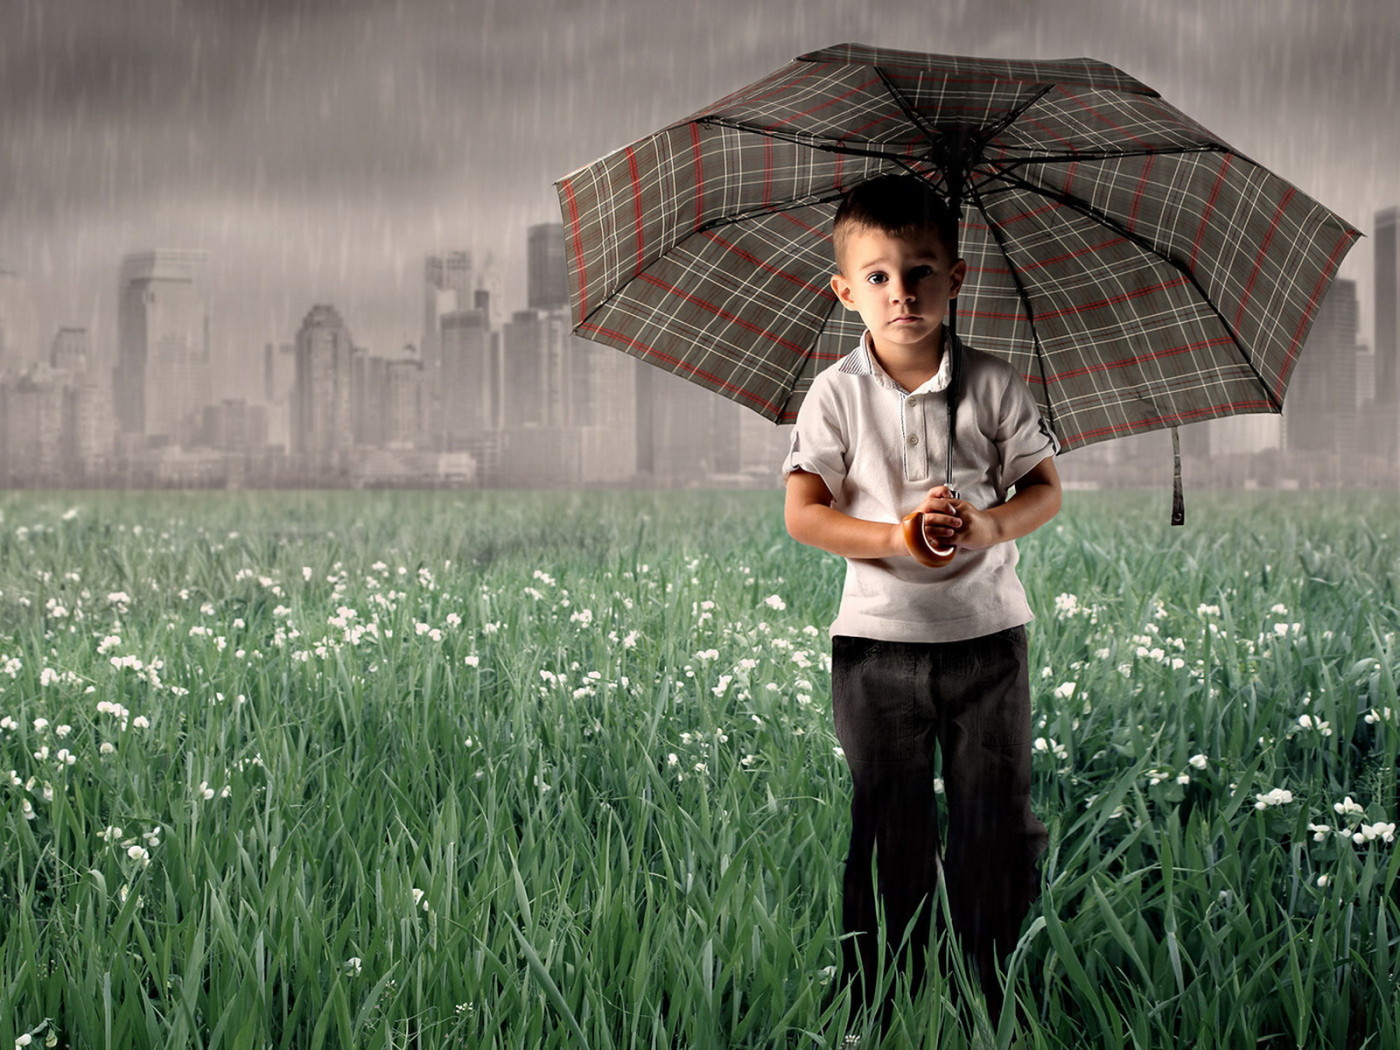 Мальчик под зонтом